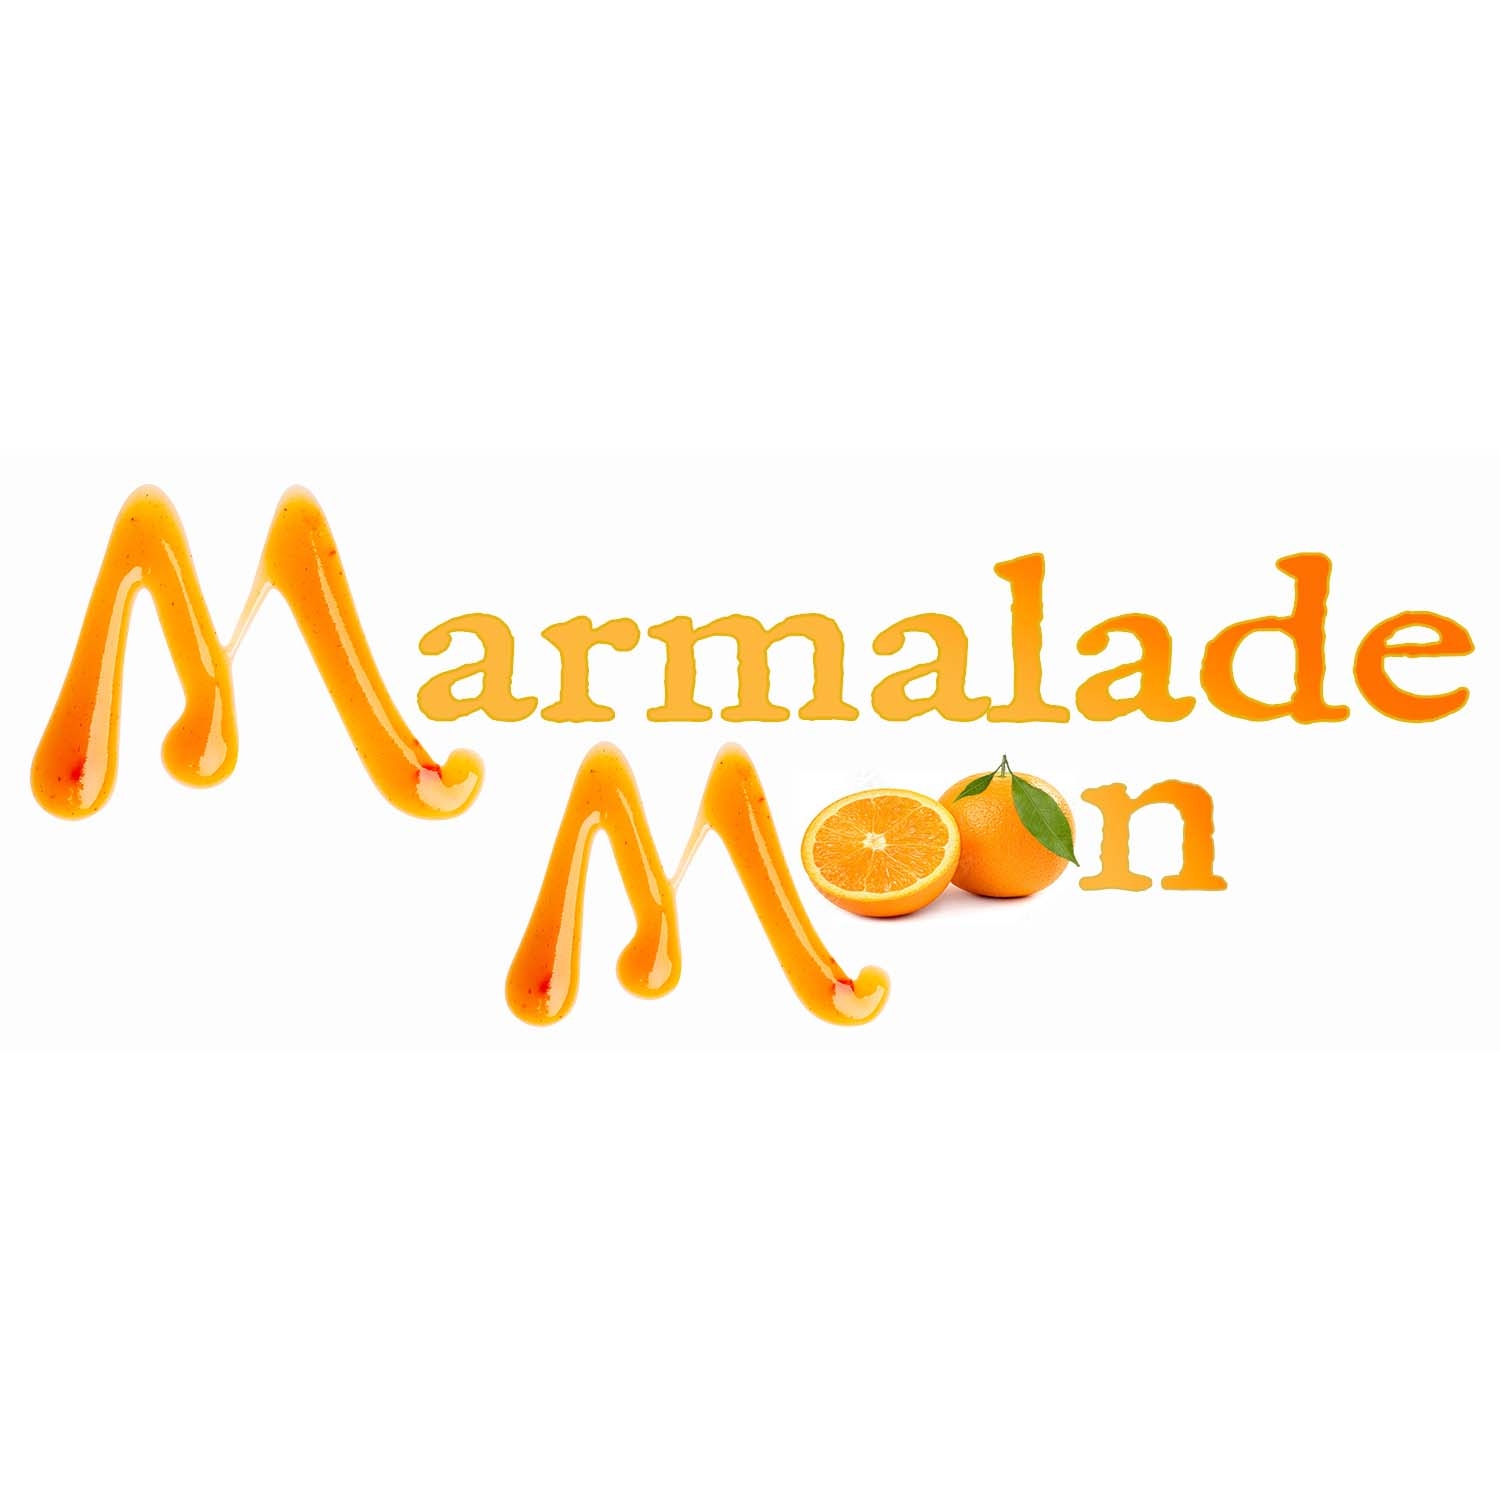 Marmalade Moon in Ames, Iowa.